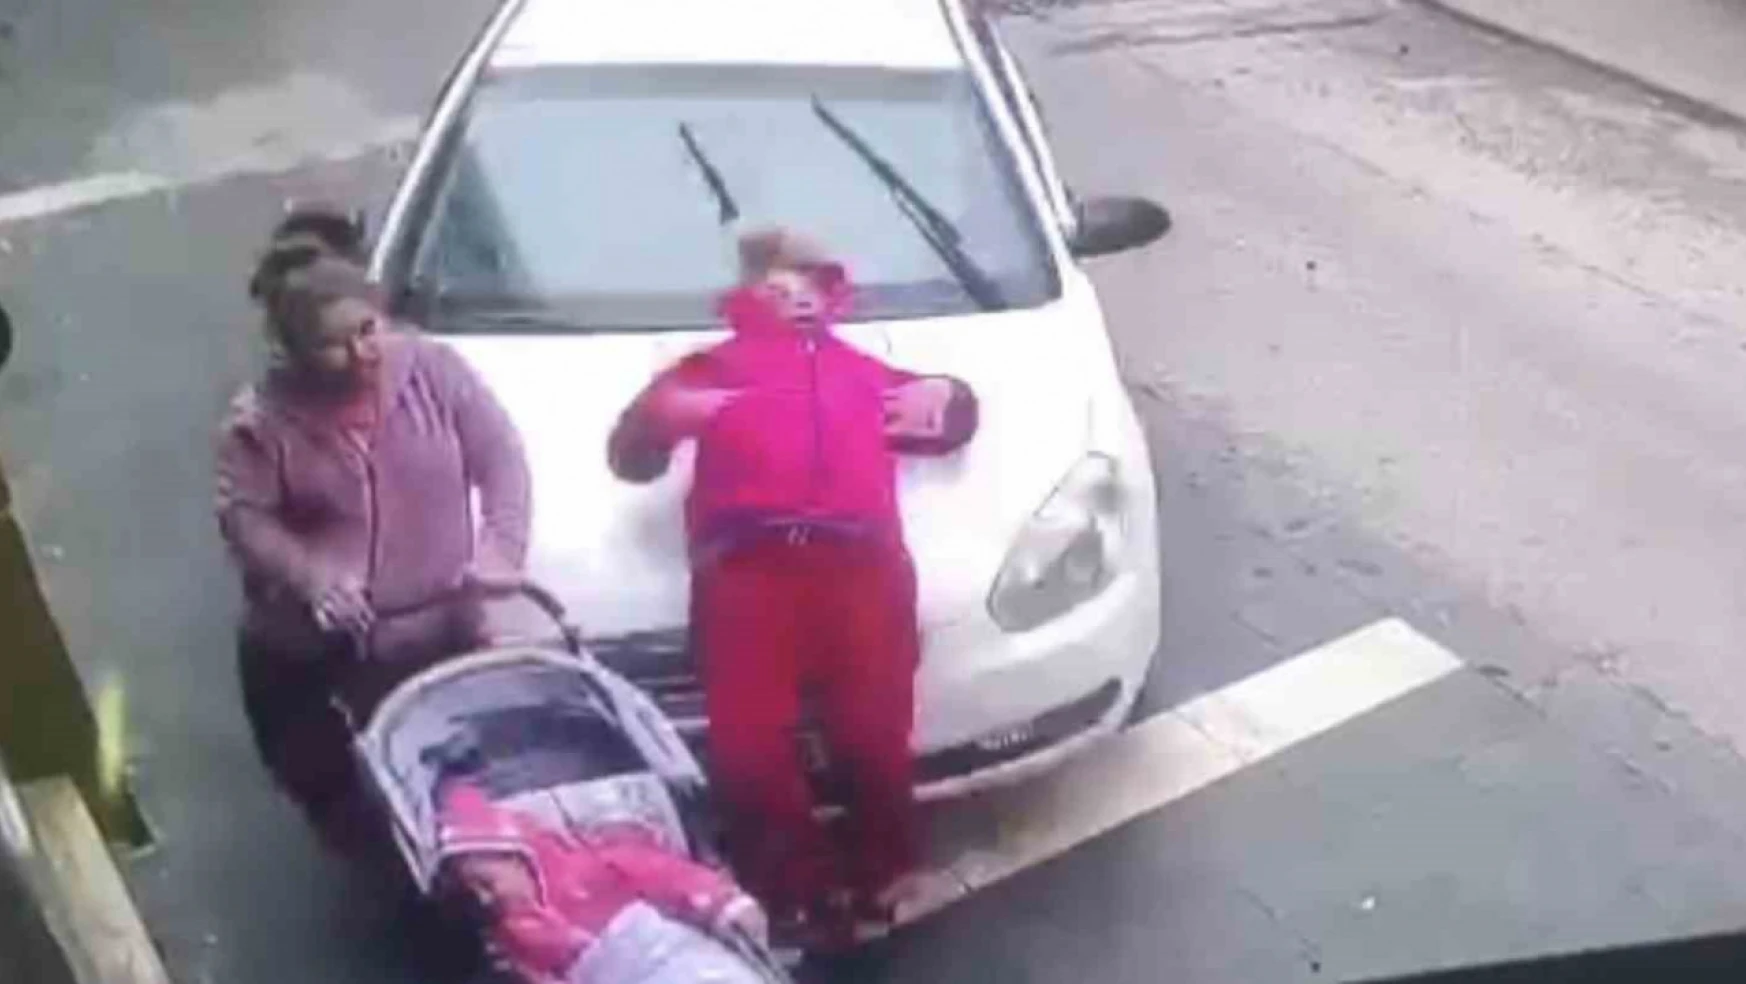 Gaziantep'te kaldırımda yürüyen 2 kadın ile bebeğe araba çarptı